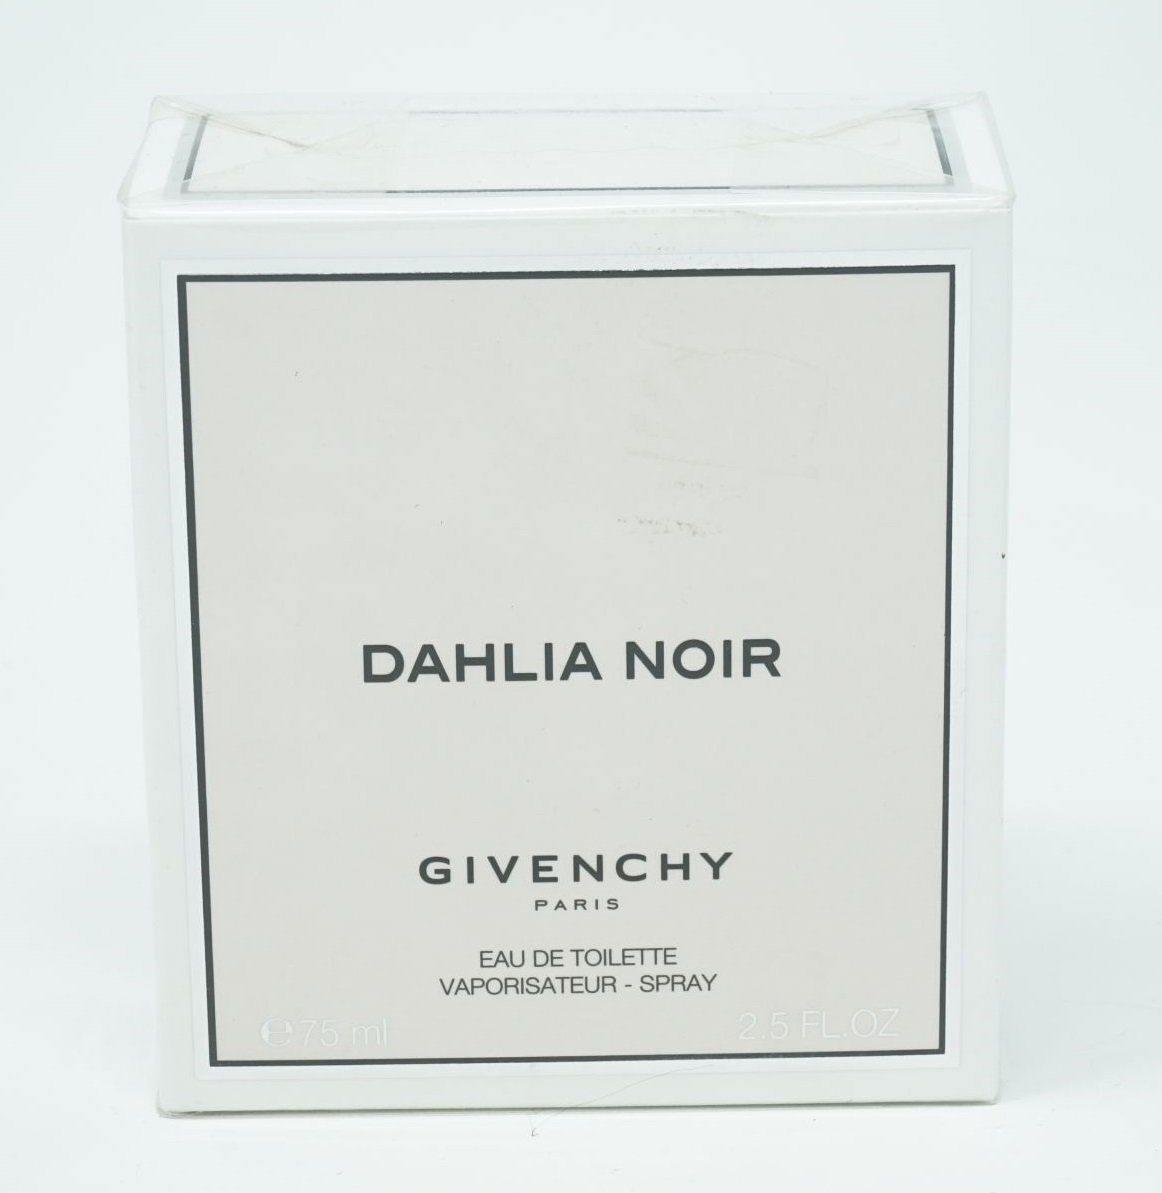 GIVENCHY Eau de Toilette Givenchy Dahlia Noir Eau de Toilette Spray 75ml